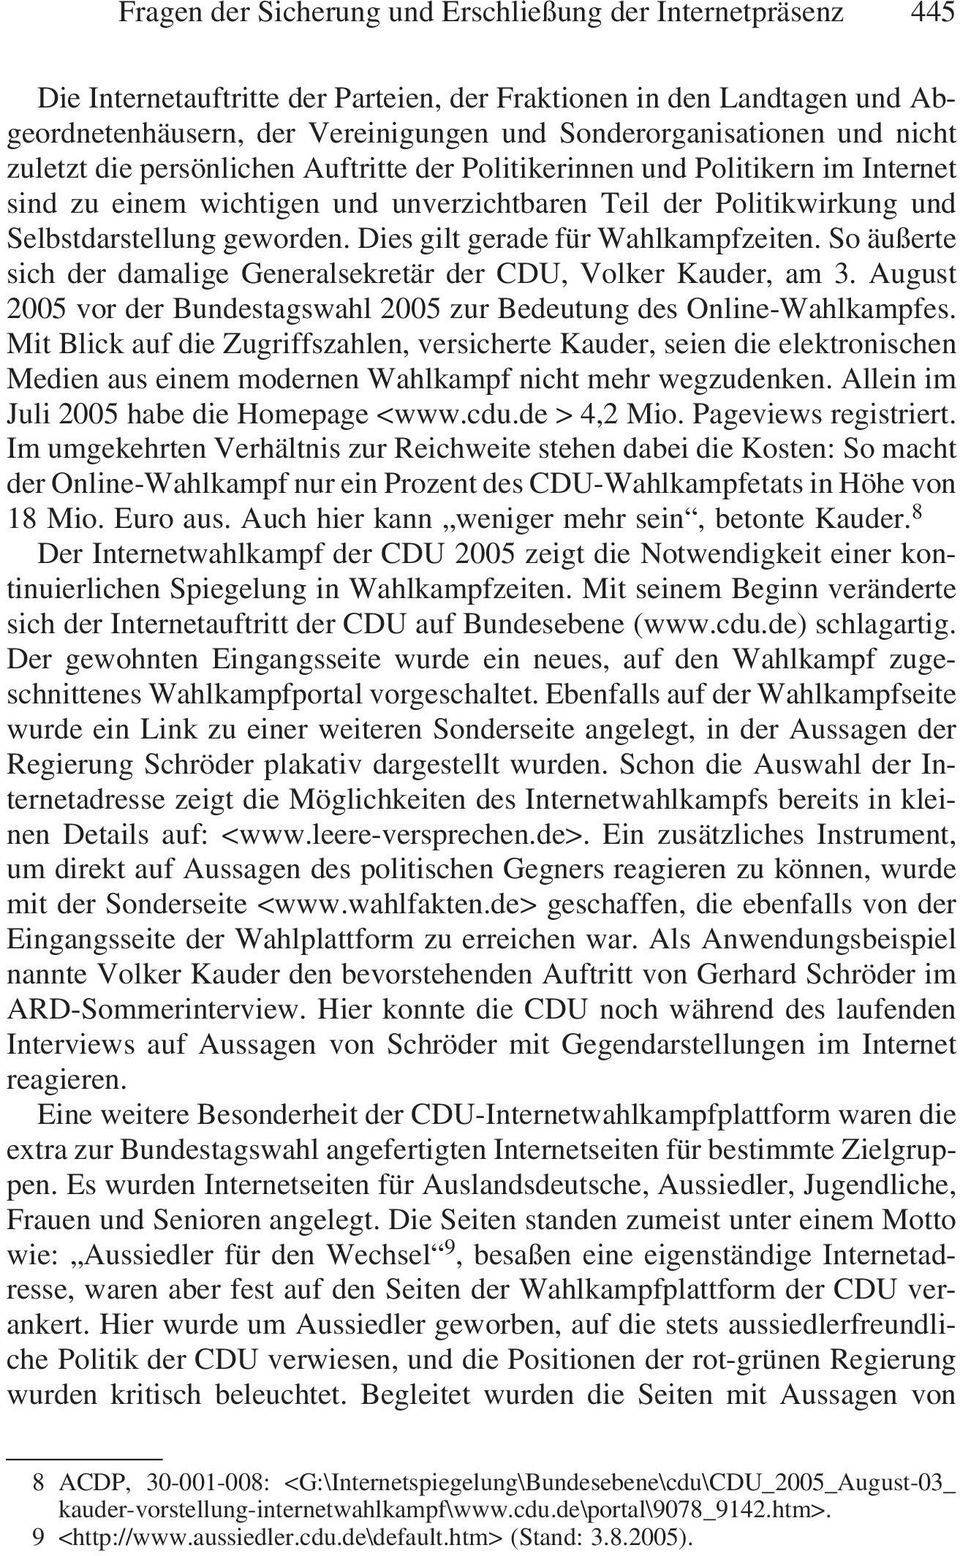 Dies gilt gerade für Wahlkampfzeiten. So äußerte sich der damalige Generalsekretär der CDU, Volker Kauder, am 3. August 2005 vor der Bundestagswahl 2005 zur Bedeutung des Online-Wahlkampfes.